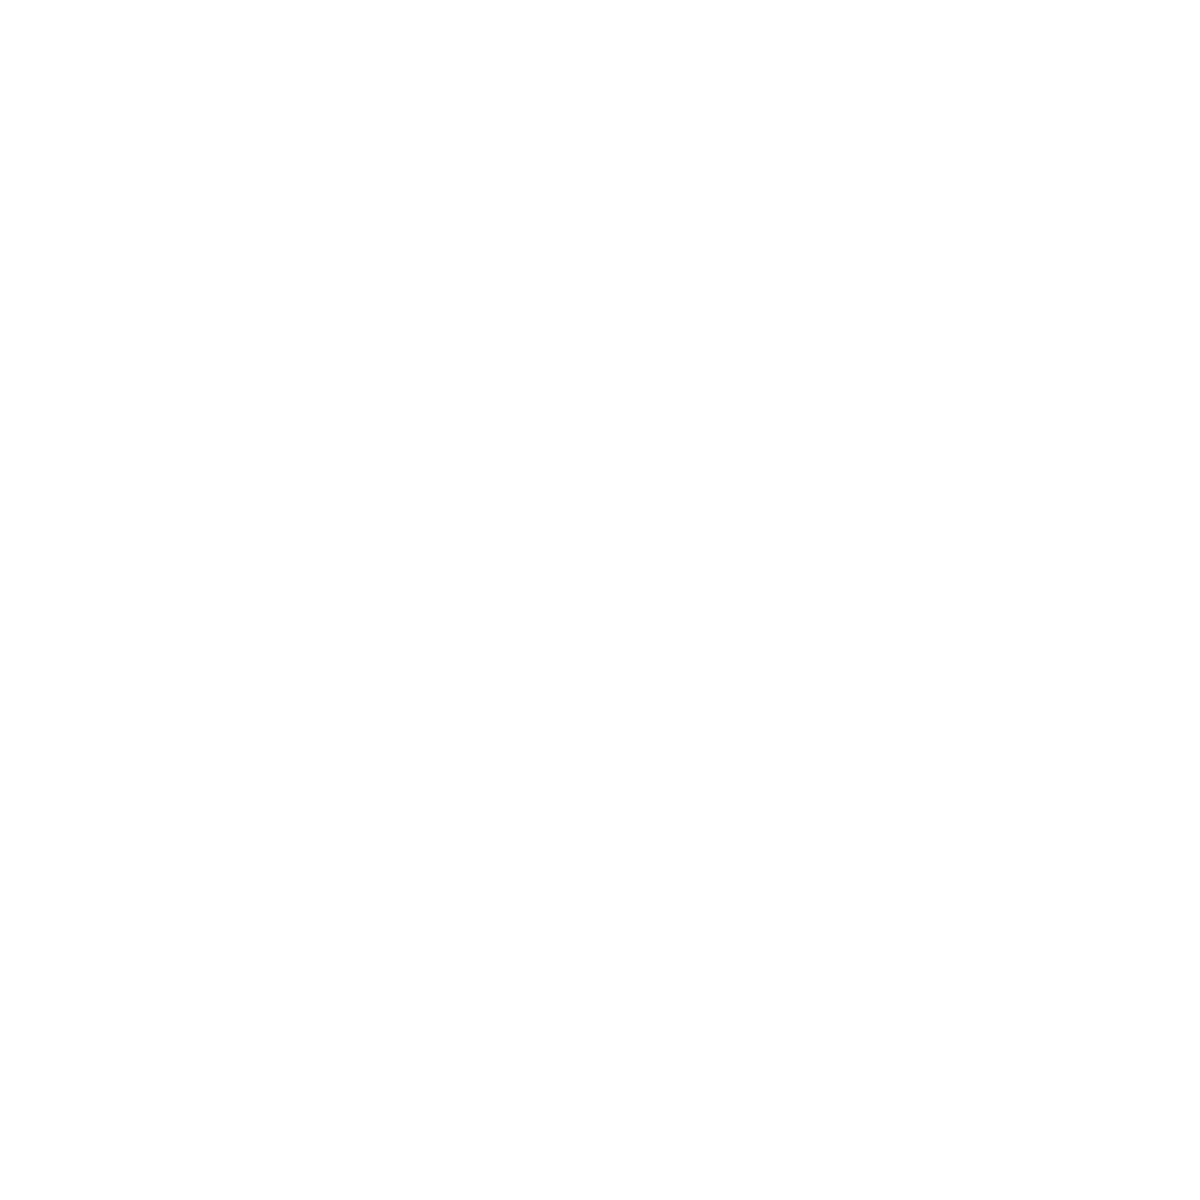 SpindleTap Brewery